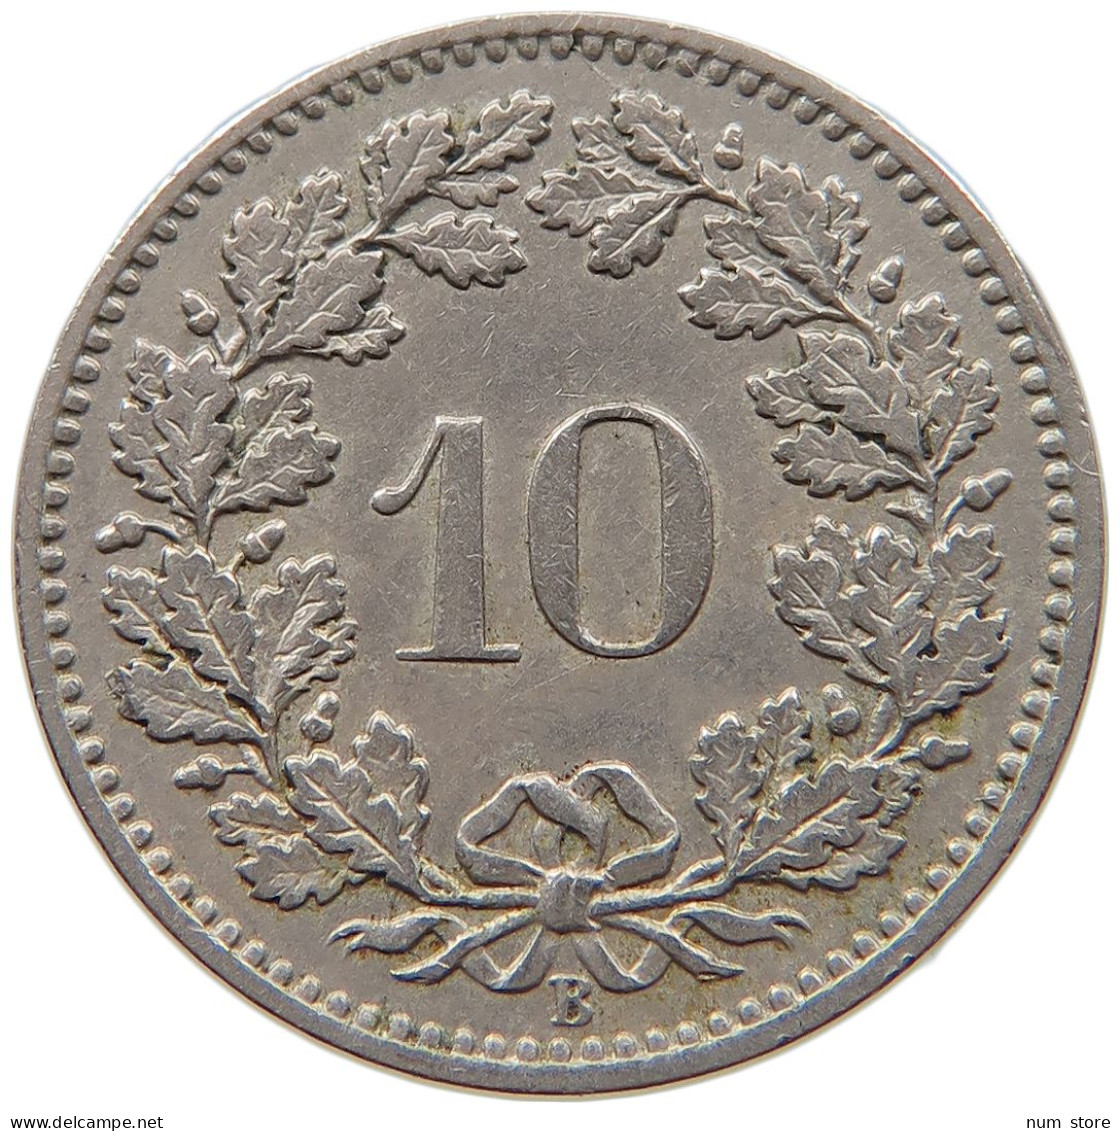 SWITZERLAND 10 RAPPEN 1885 #t031 0145 - 10 Centimes / Rappen